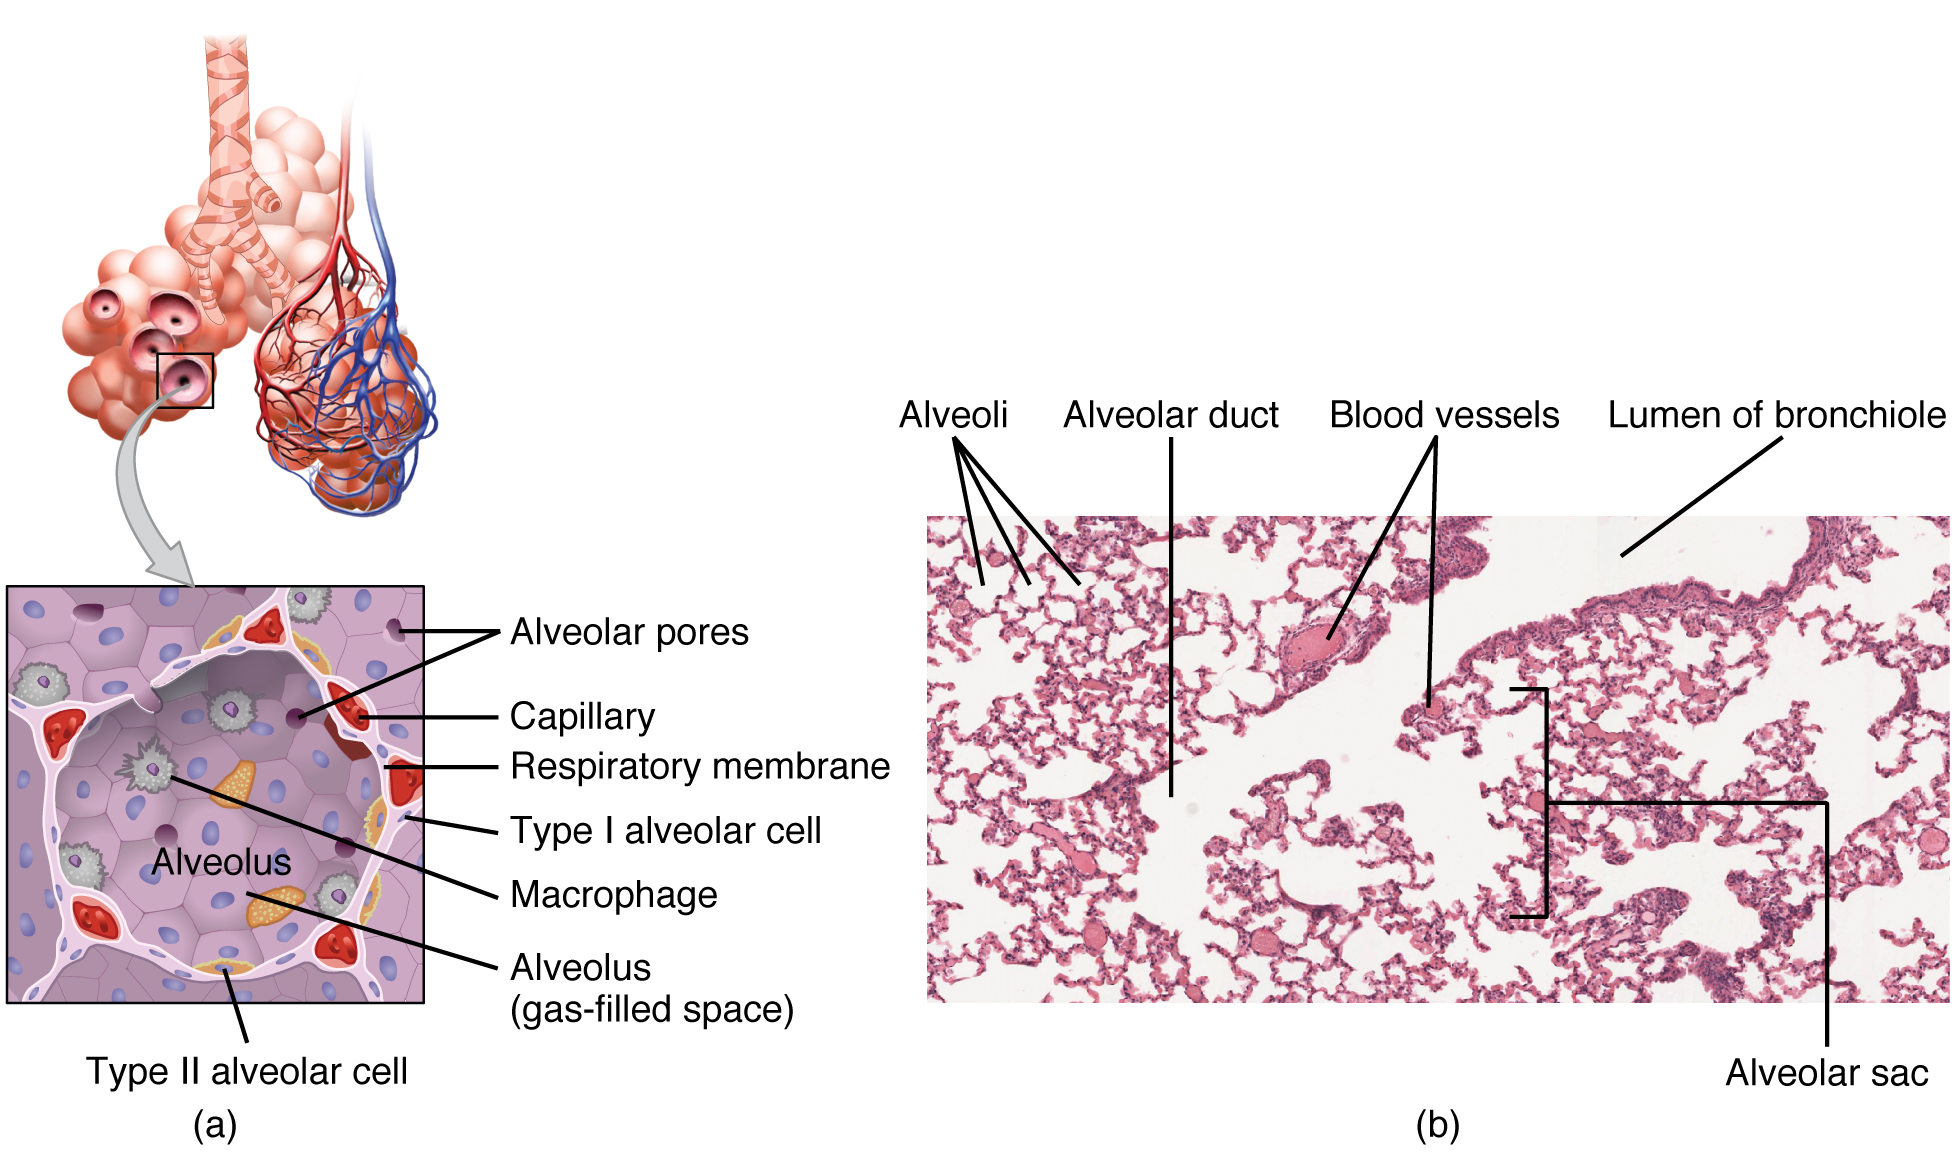 Mchoro ulioandikwa na micrograph ya bronchiole na alveoli inayohusiana ya eneo la kupumua.